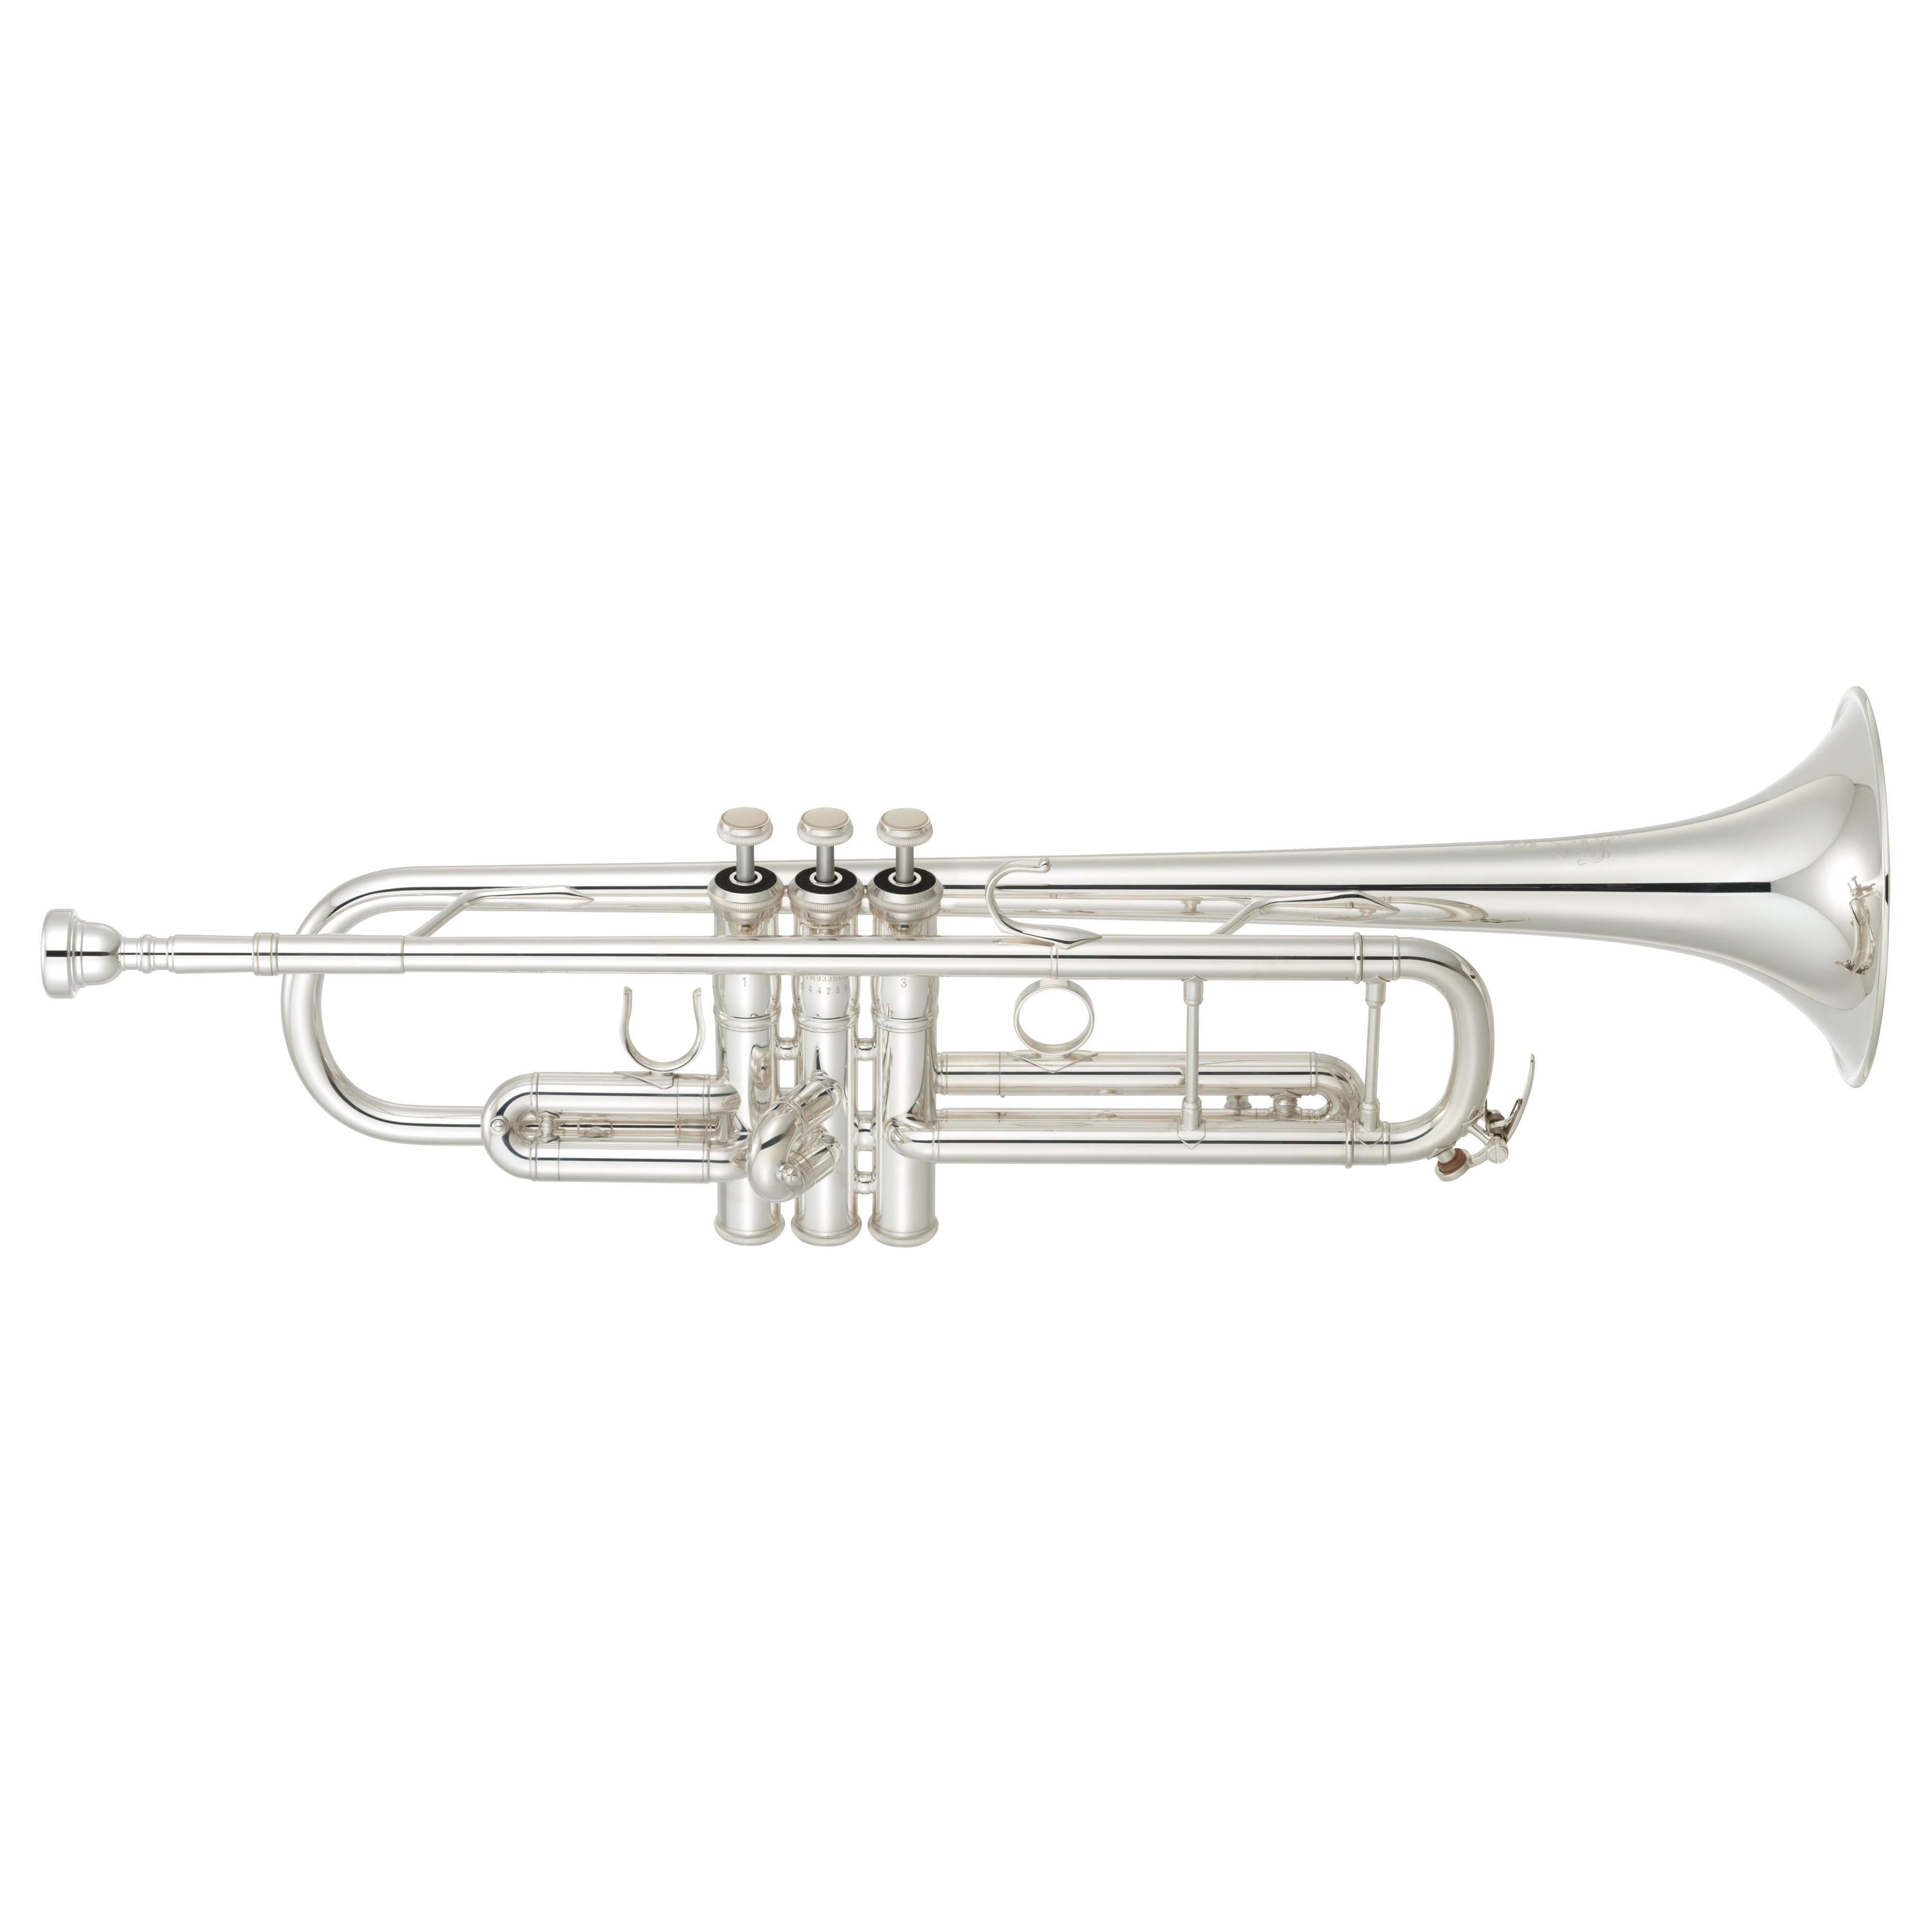 Звук музыкальной трубы. Труба Yamaha YTR-2330s. Yamaha YTR-3335s труба. Труба j. Michael tr-300s. Труба BB Yamaha YTR-6345gs.